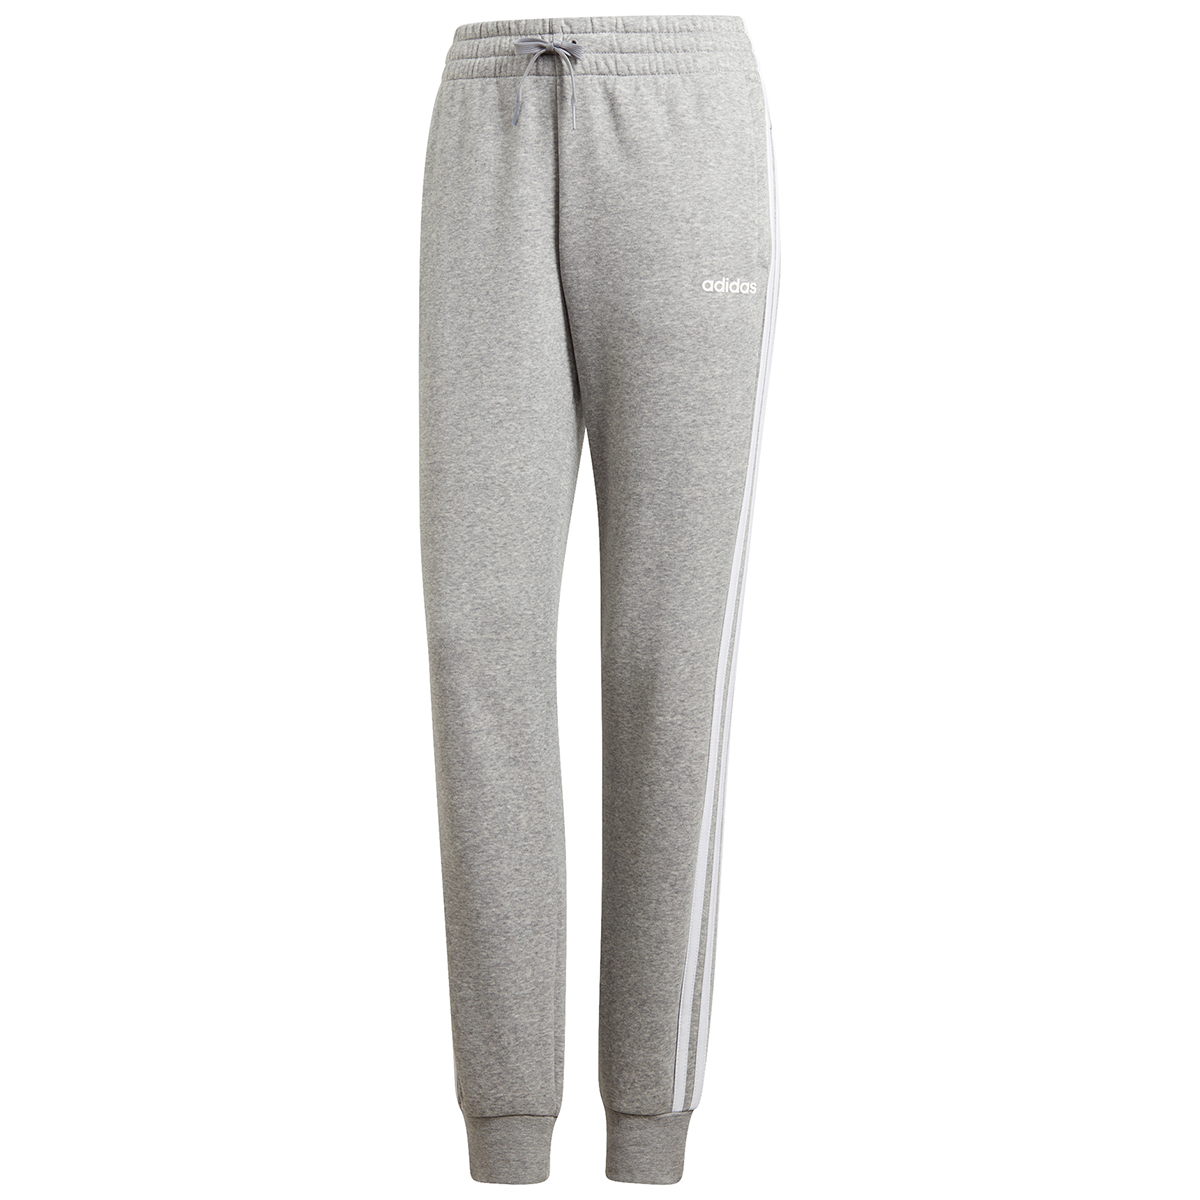 Adidas Women's 3-Stripe Jogging Pants M Grey/White XL | eBay